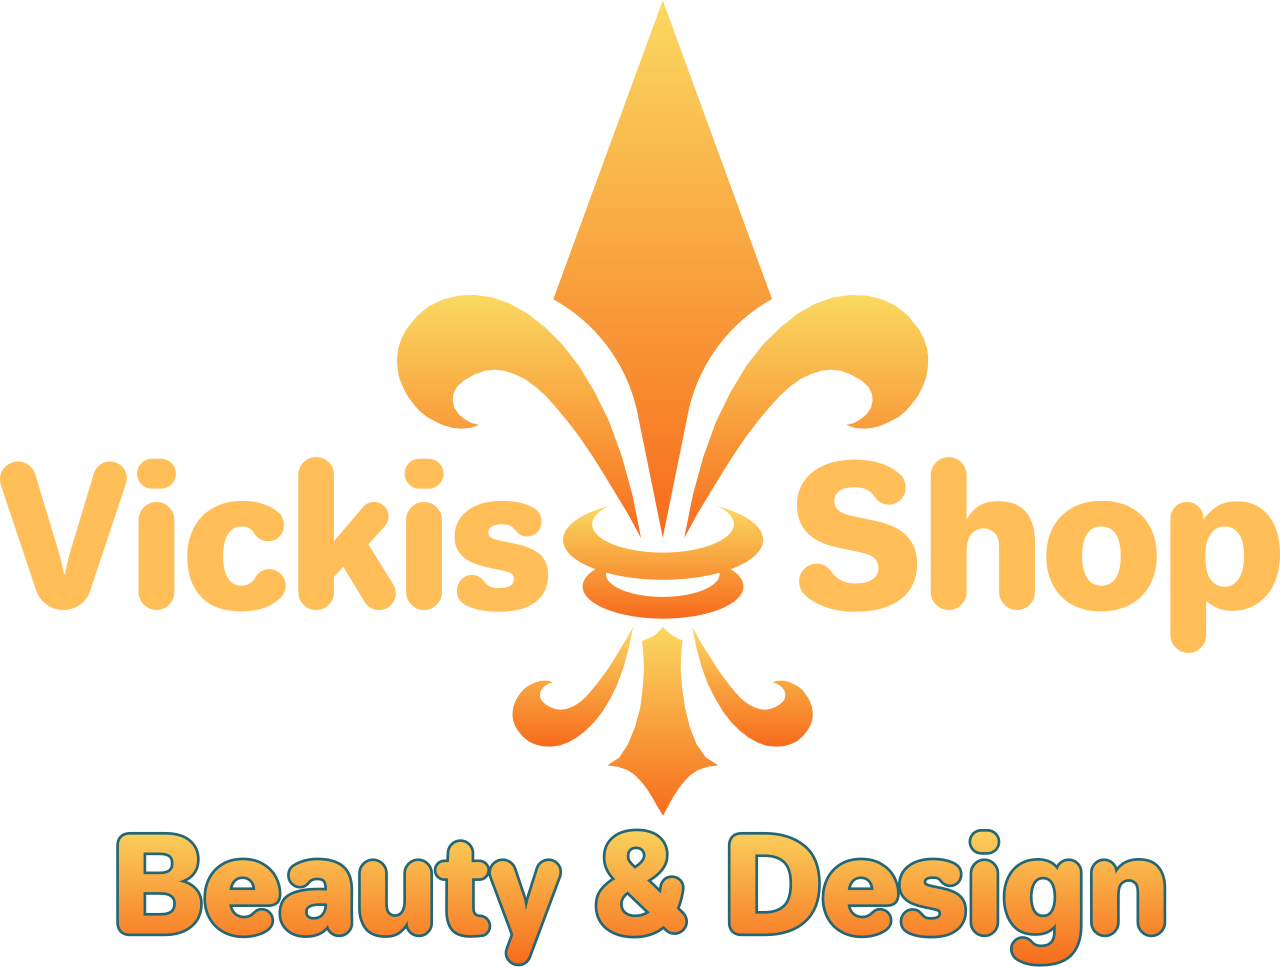 Vickis     Shop's web page